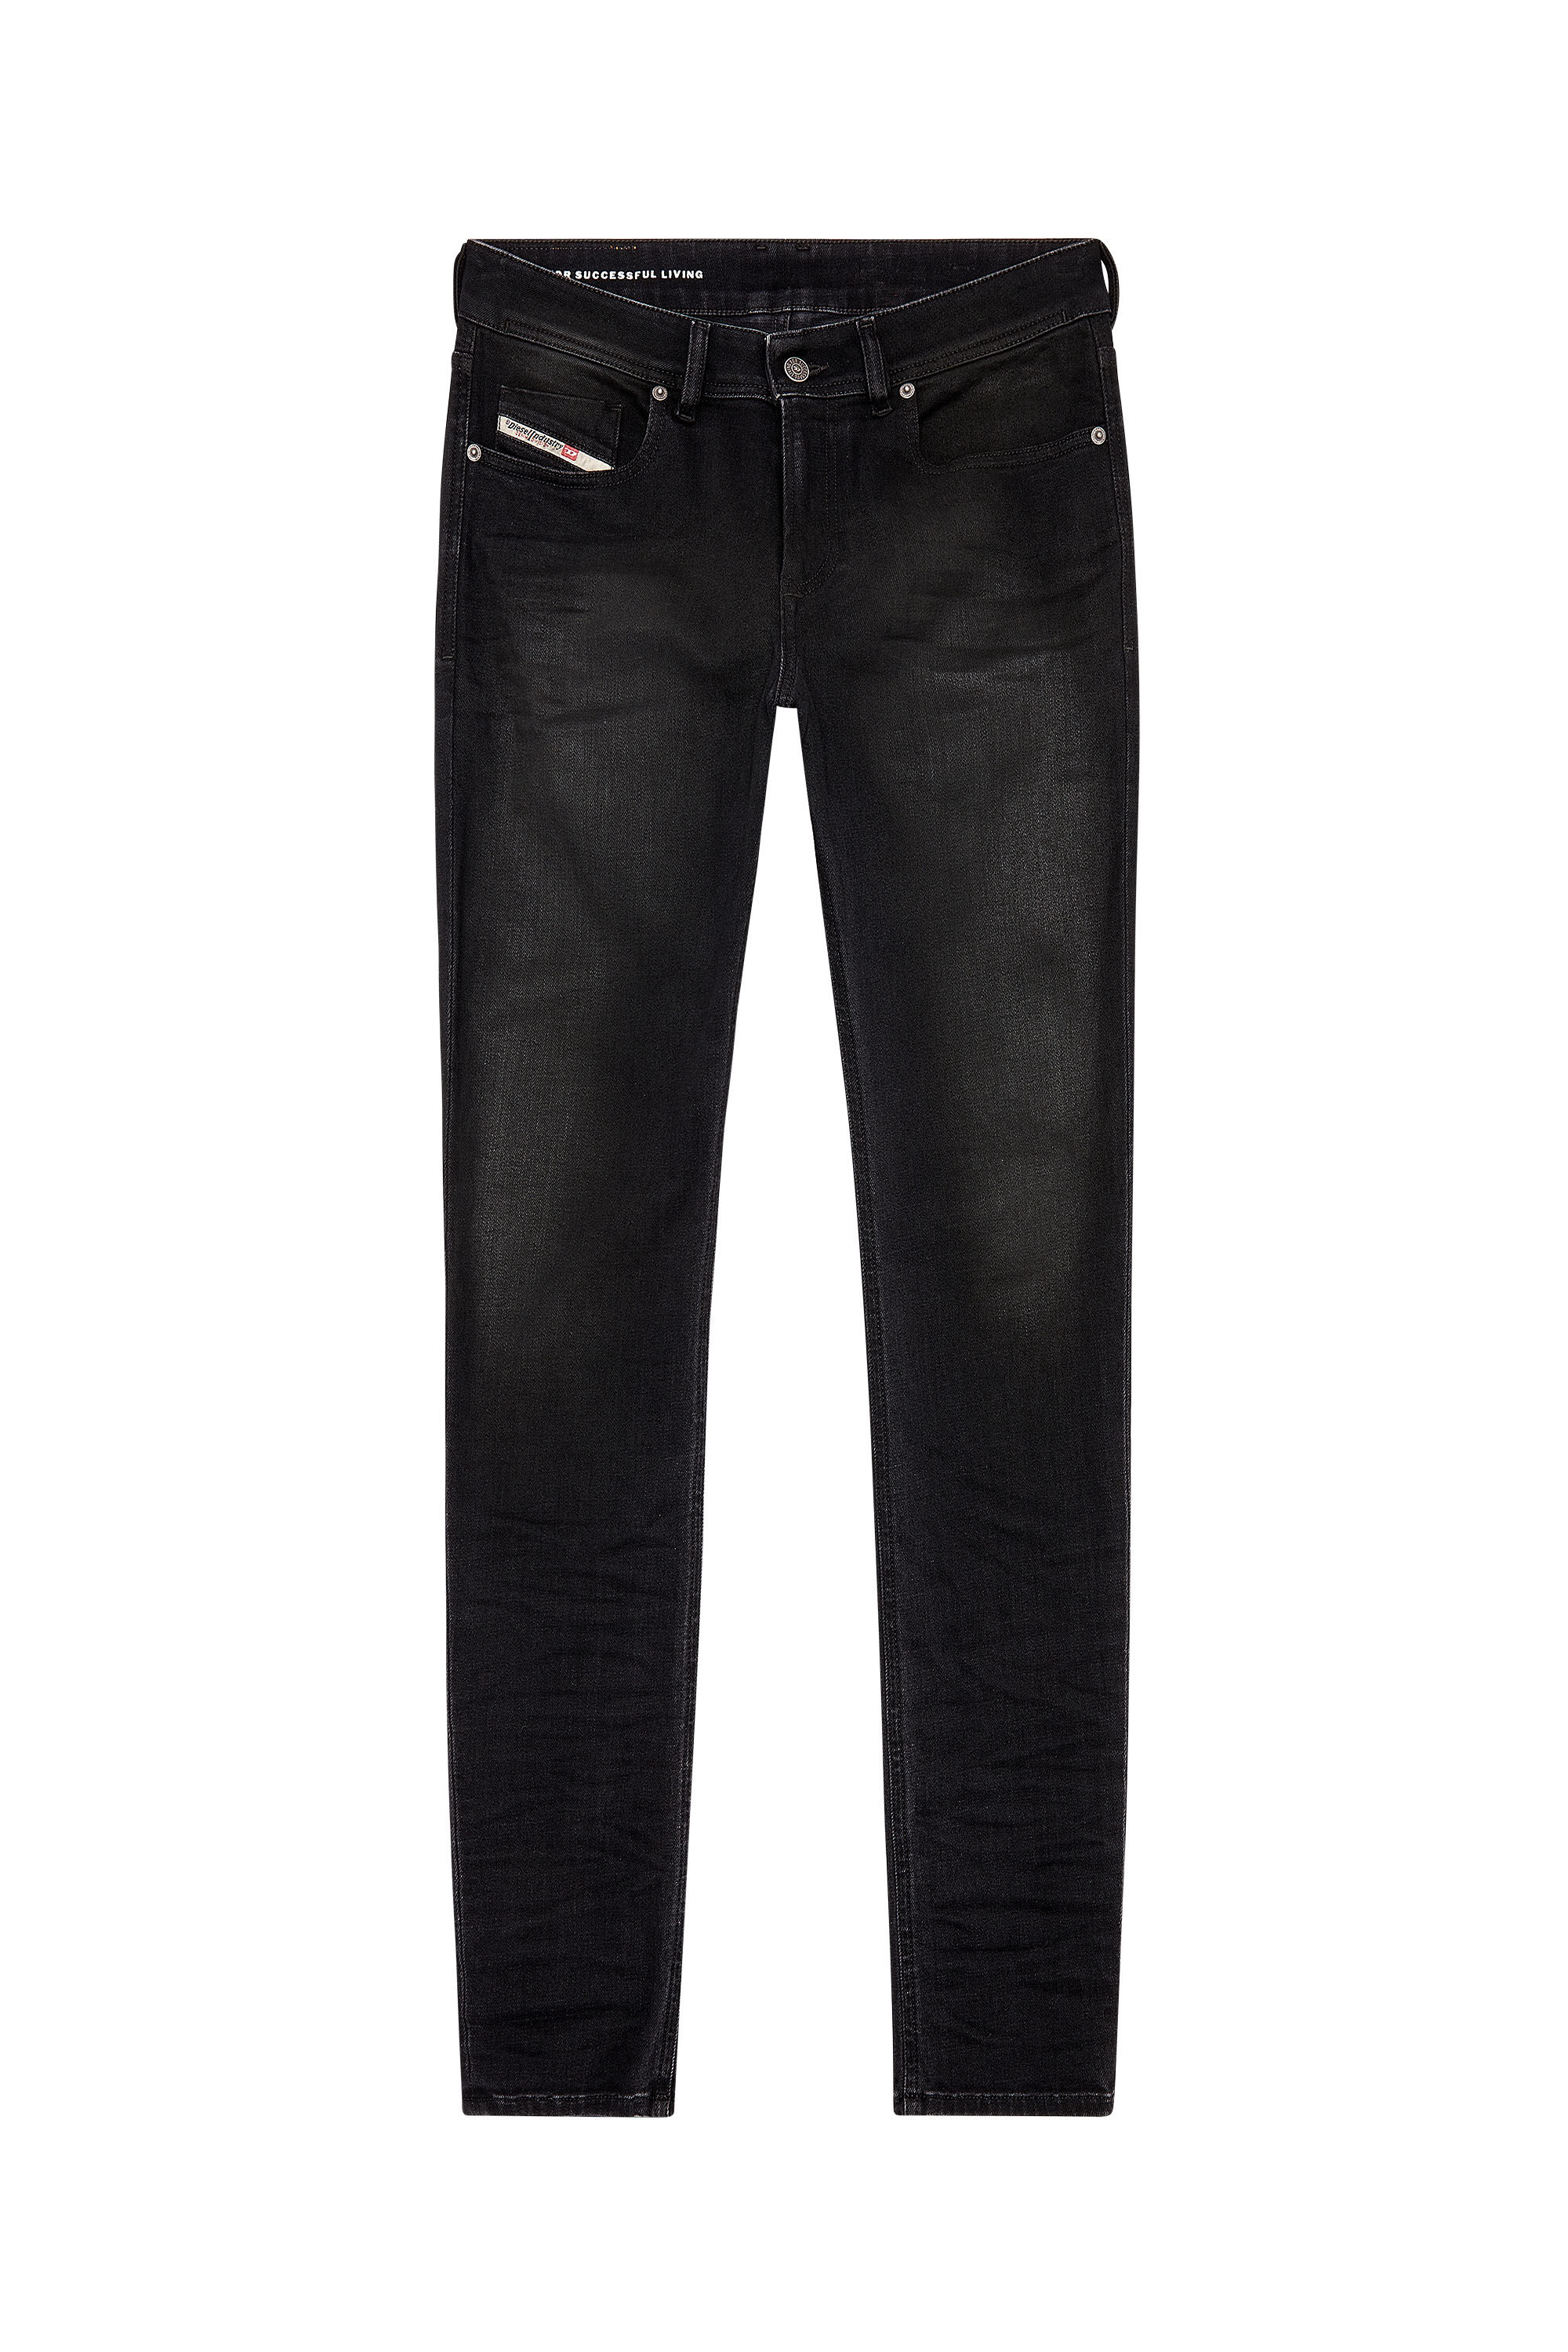 Diesel - Man Skinny Jeans 1979 Sleenker 09H94, Black/Dark grey - Image 2